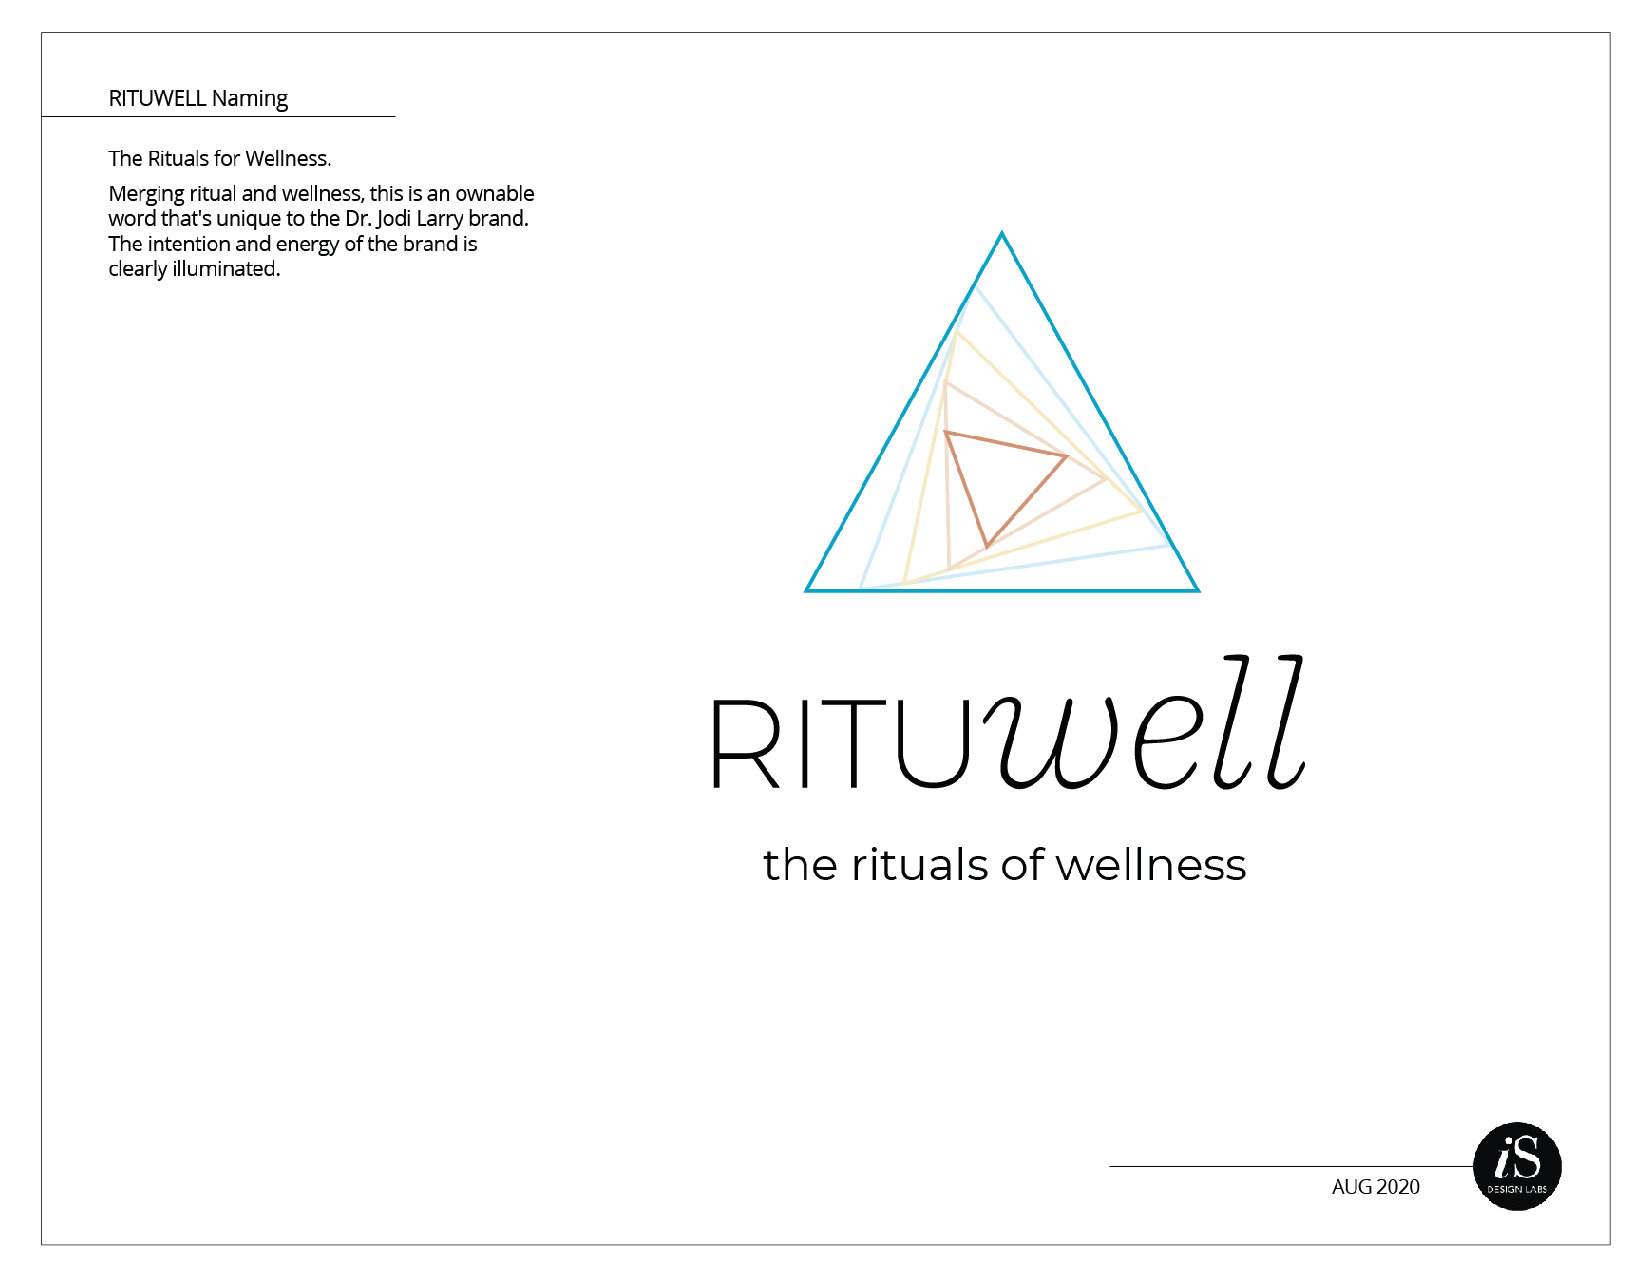 Rituwell BrandStandards wframe-03.jpg